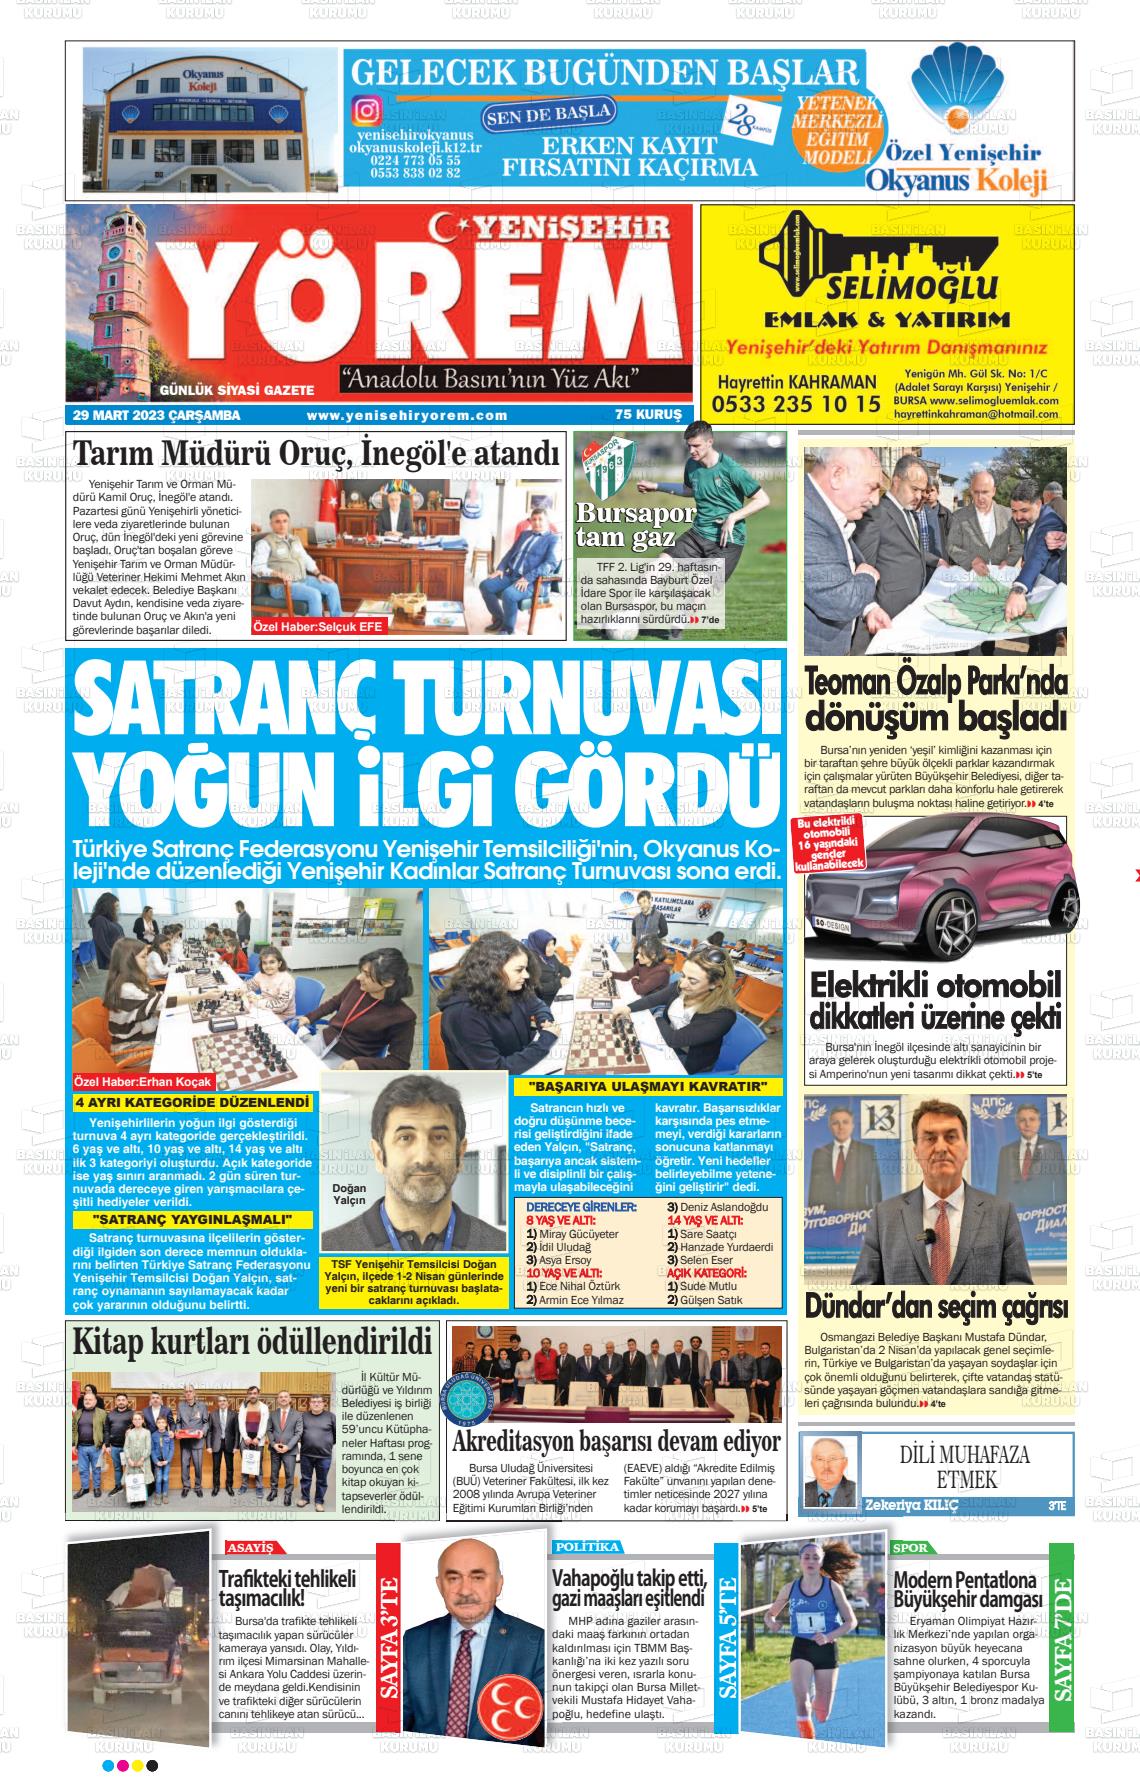 29 Mart 2023 Yenişehir Yörem Gazete Manşeti